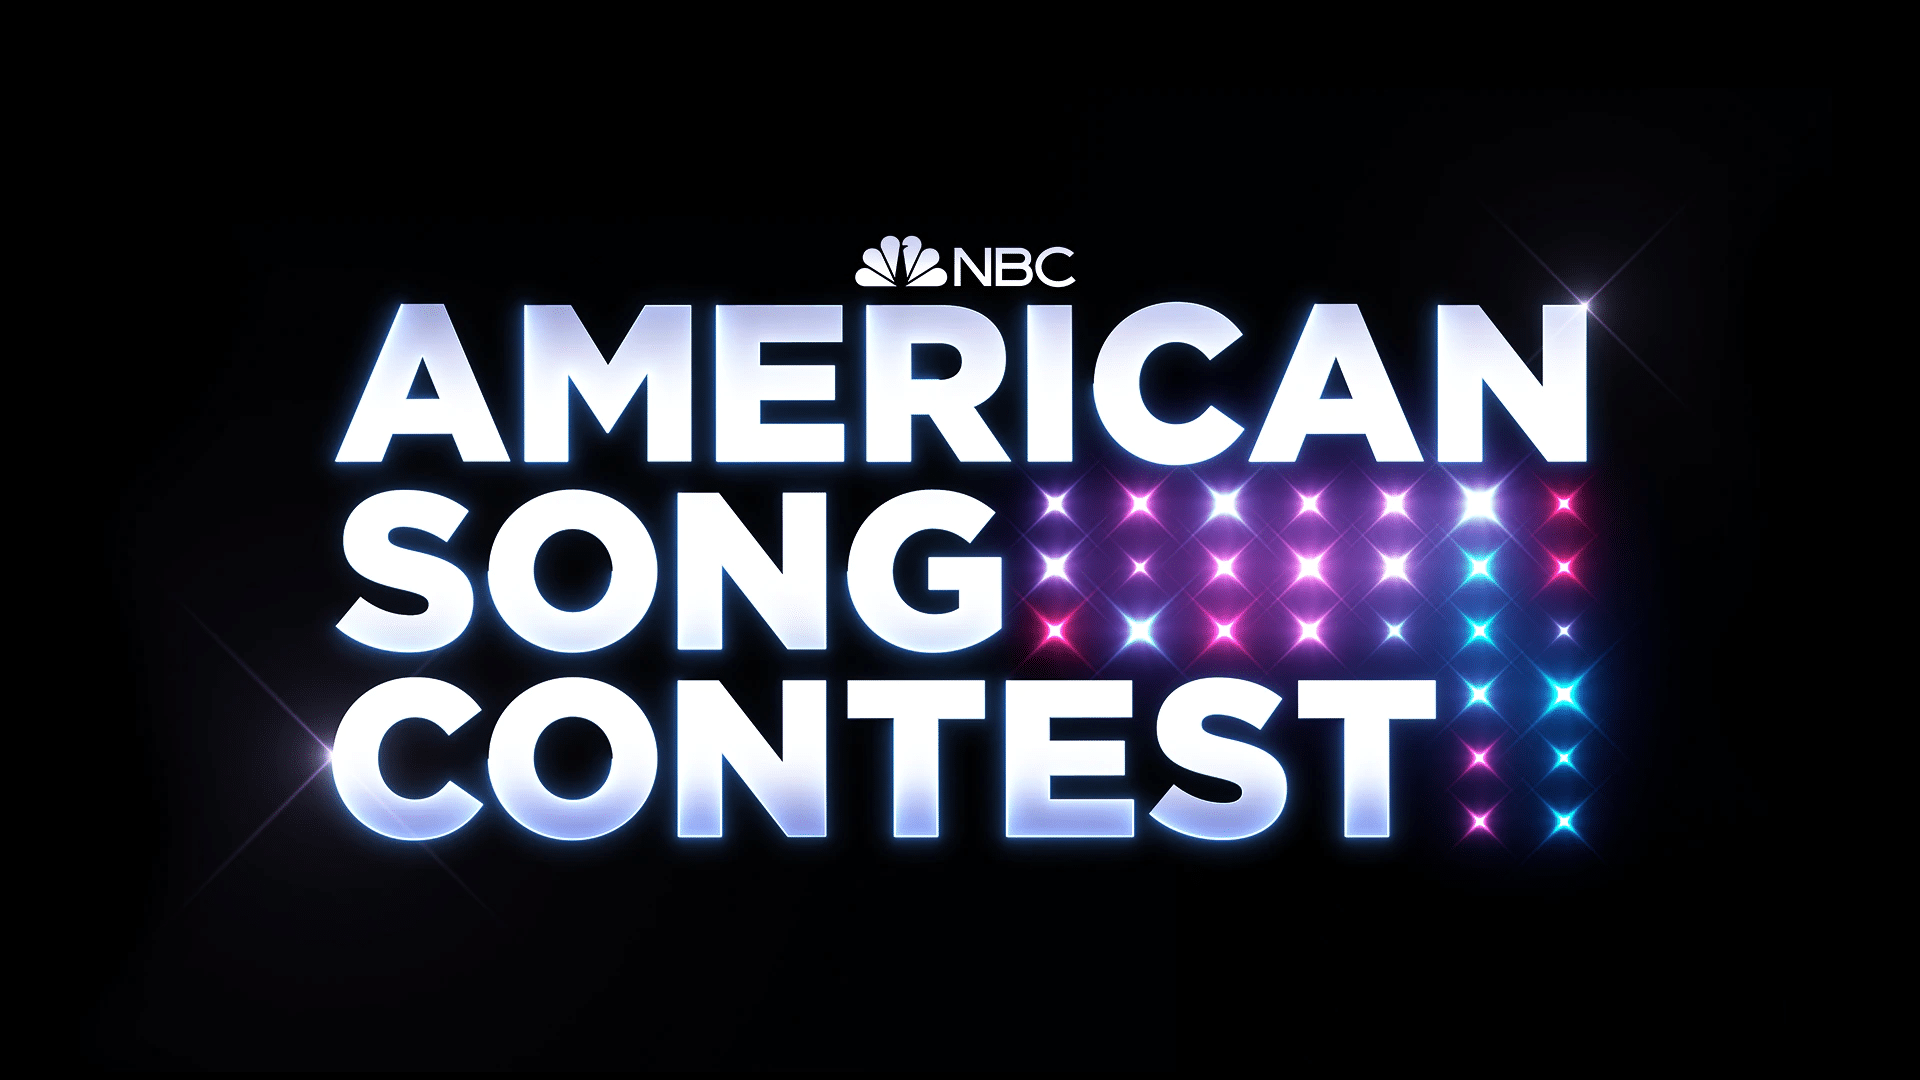 Az American Song Contest már itt kopogtat az ajtónkon - összefoglalónkban bemutatjuk az Amerikai Dalfesztivál formátumát részletesen.